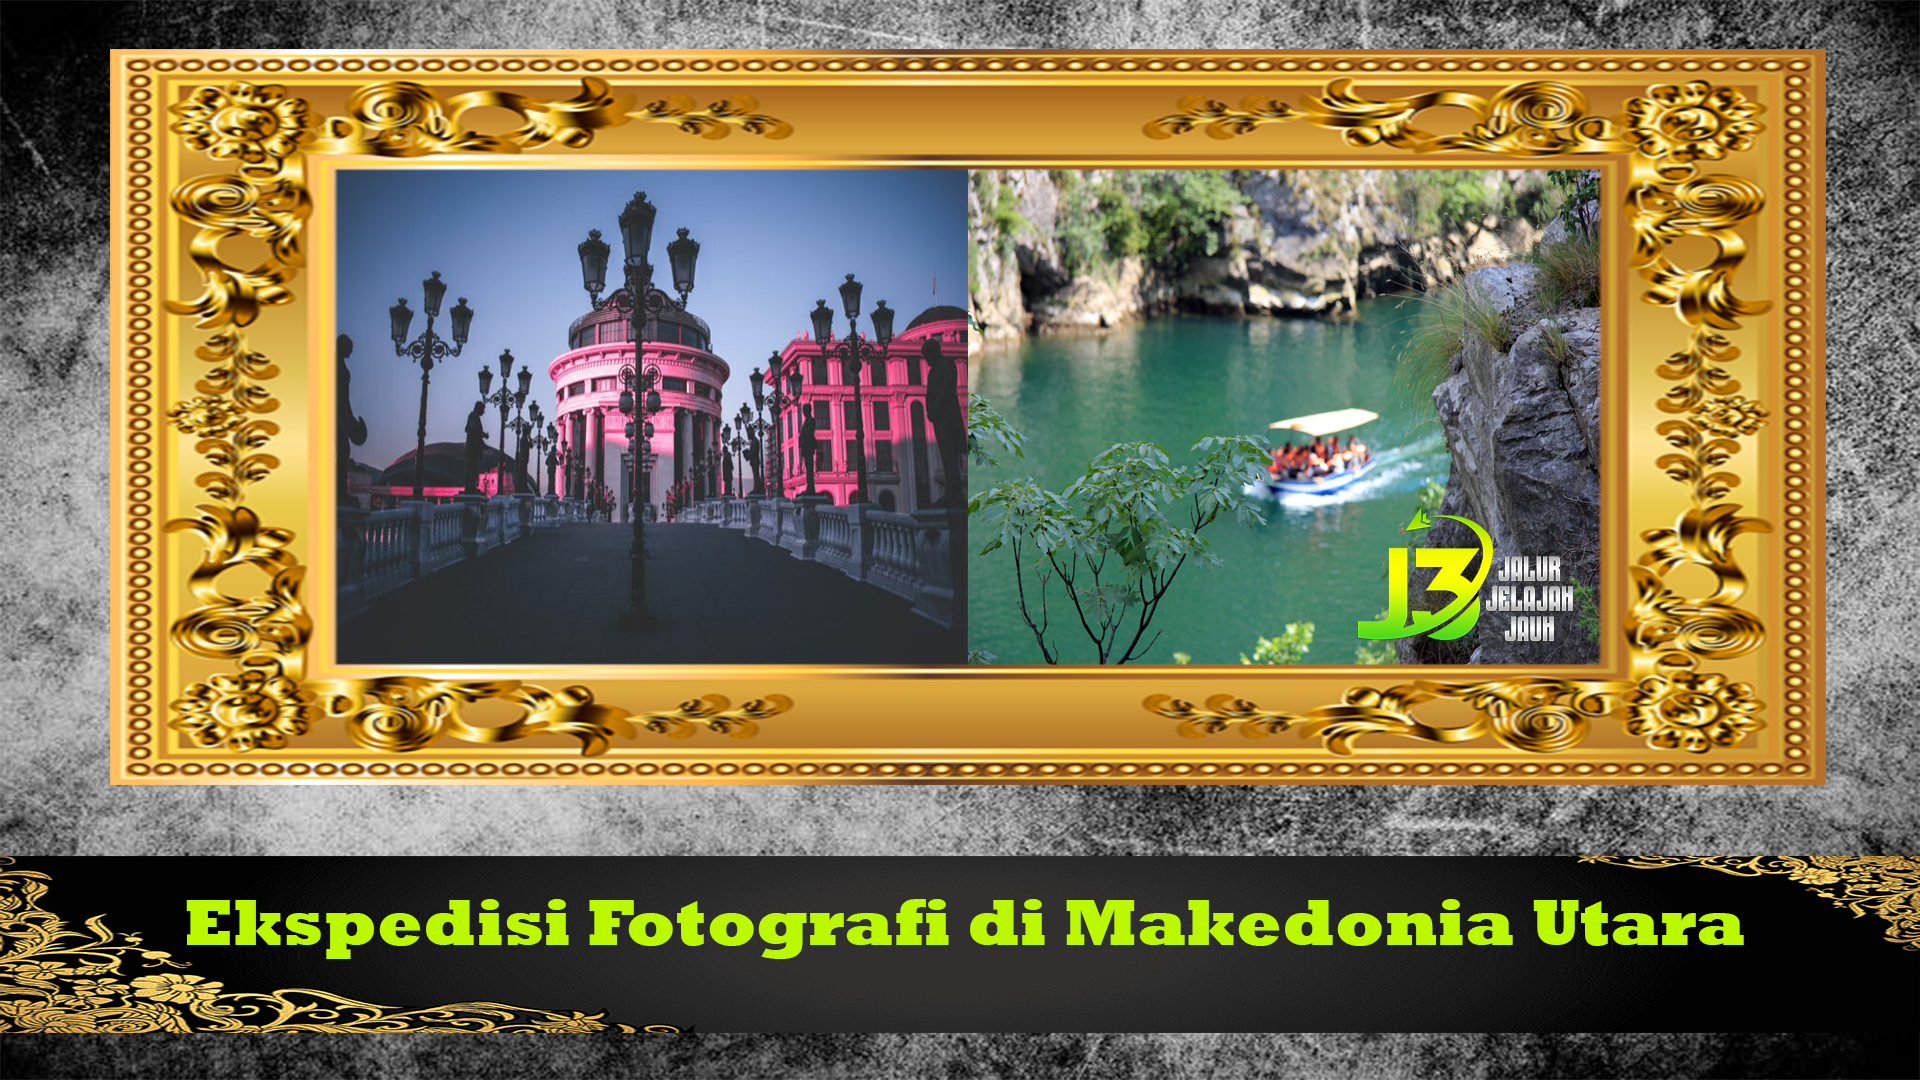 Ekspedisi Fotografi di Makedonia Utara